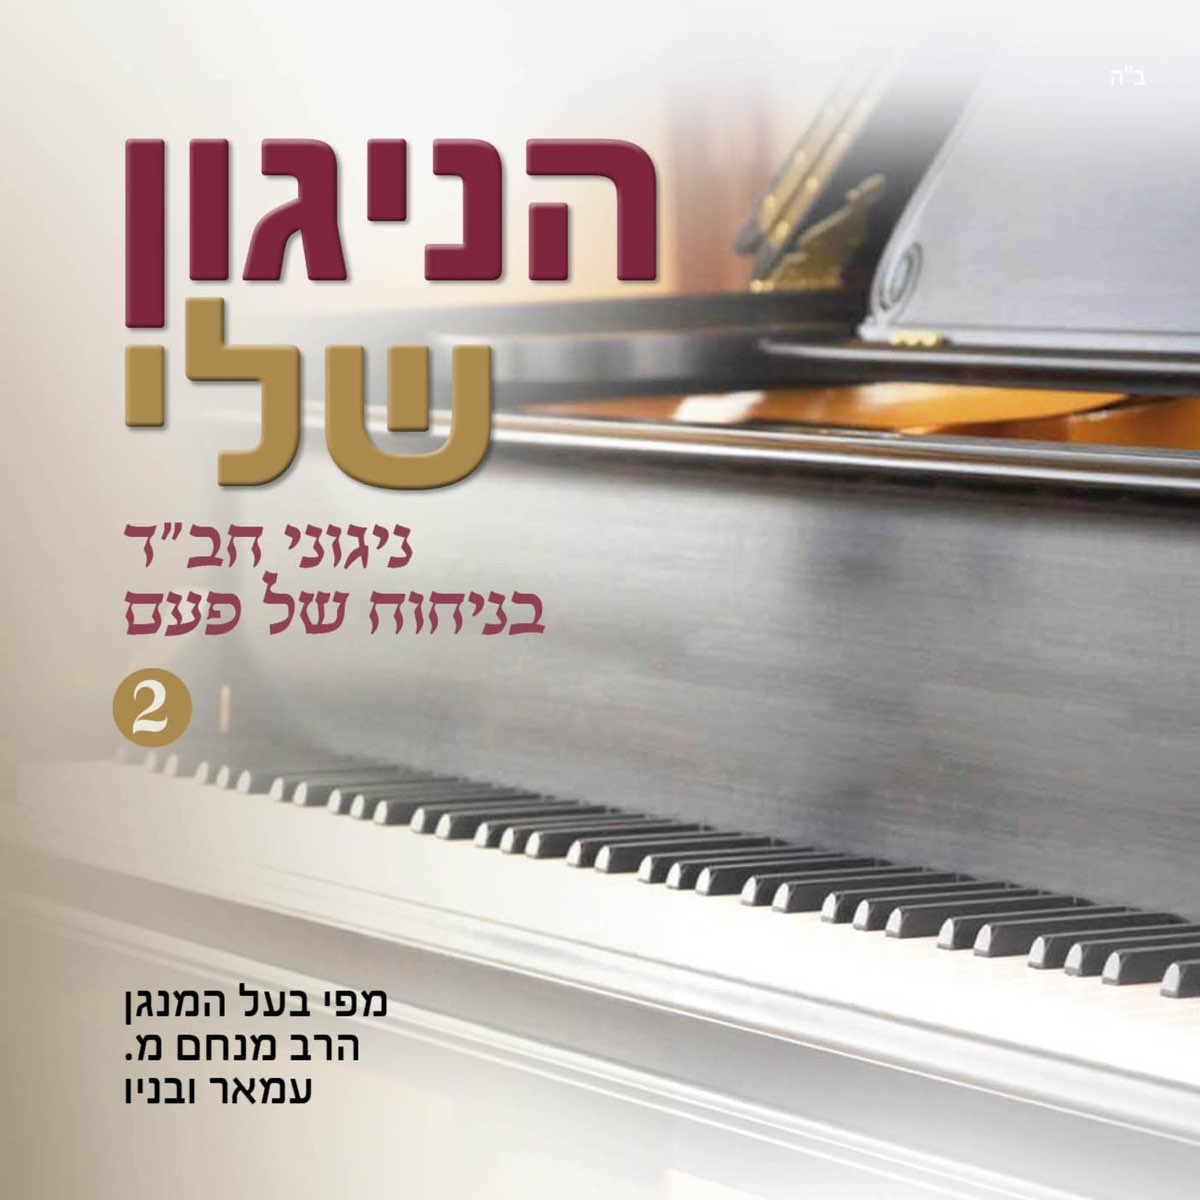 הניגון שלי - ניגוני חב"ד בניחוח של פעם 2 - Album by Rabbi Menachem Amar -  Apple Music